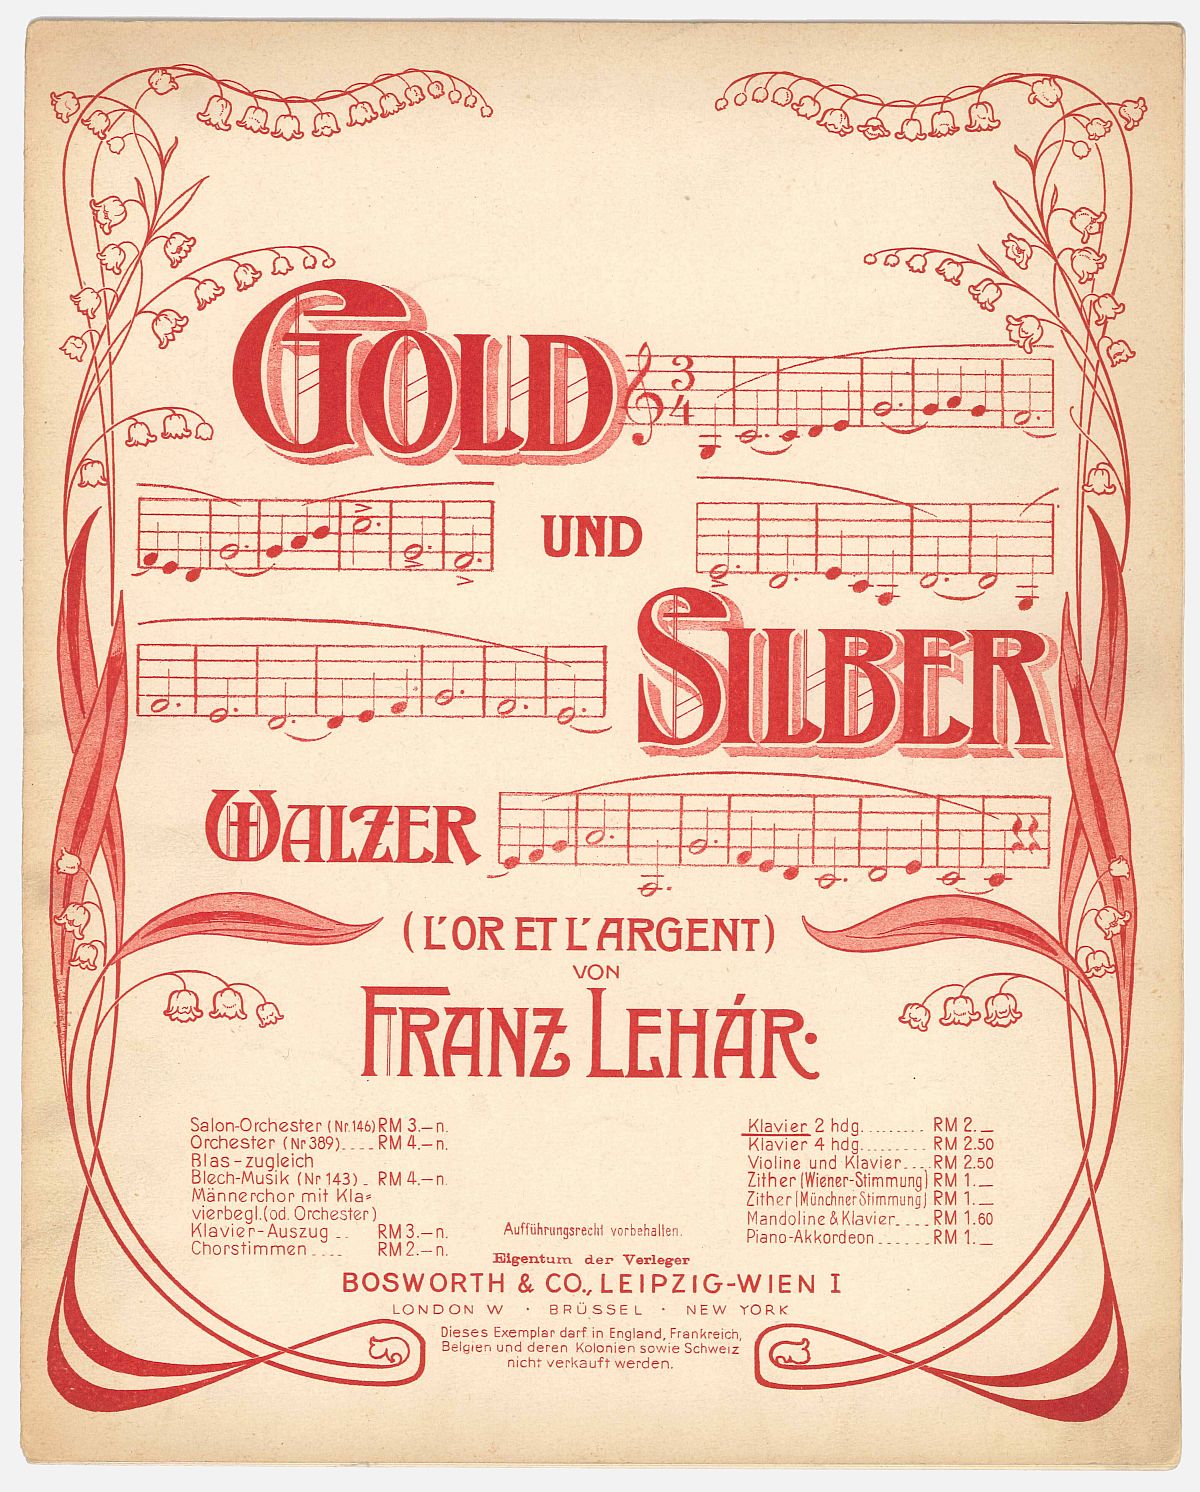 Franz Lehár: Gold und Silber op. 79, Walzer für Orchester (1902), Titelblatt; Musikverlag Bosworth & Co, Wien, Source: Collection Walter Anton